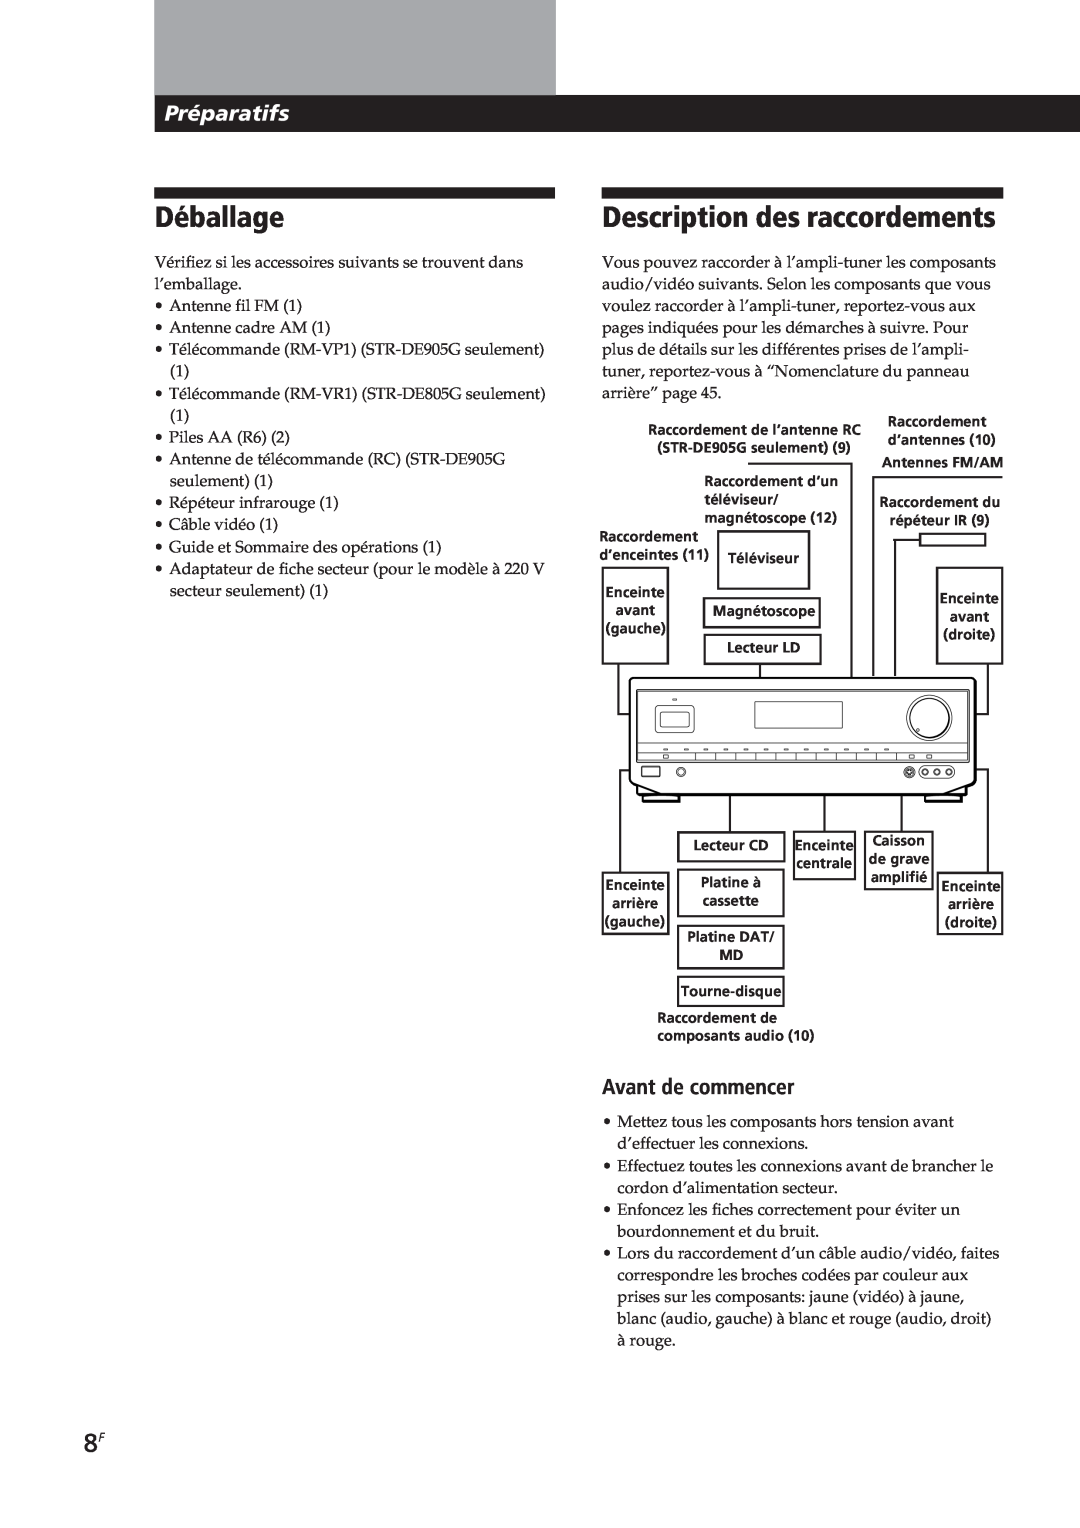 Sony STR-DE905G, STR-DE805G manual Déballage, Description des raccordements, Préparatifs, Avant de commencer 